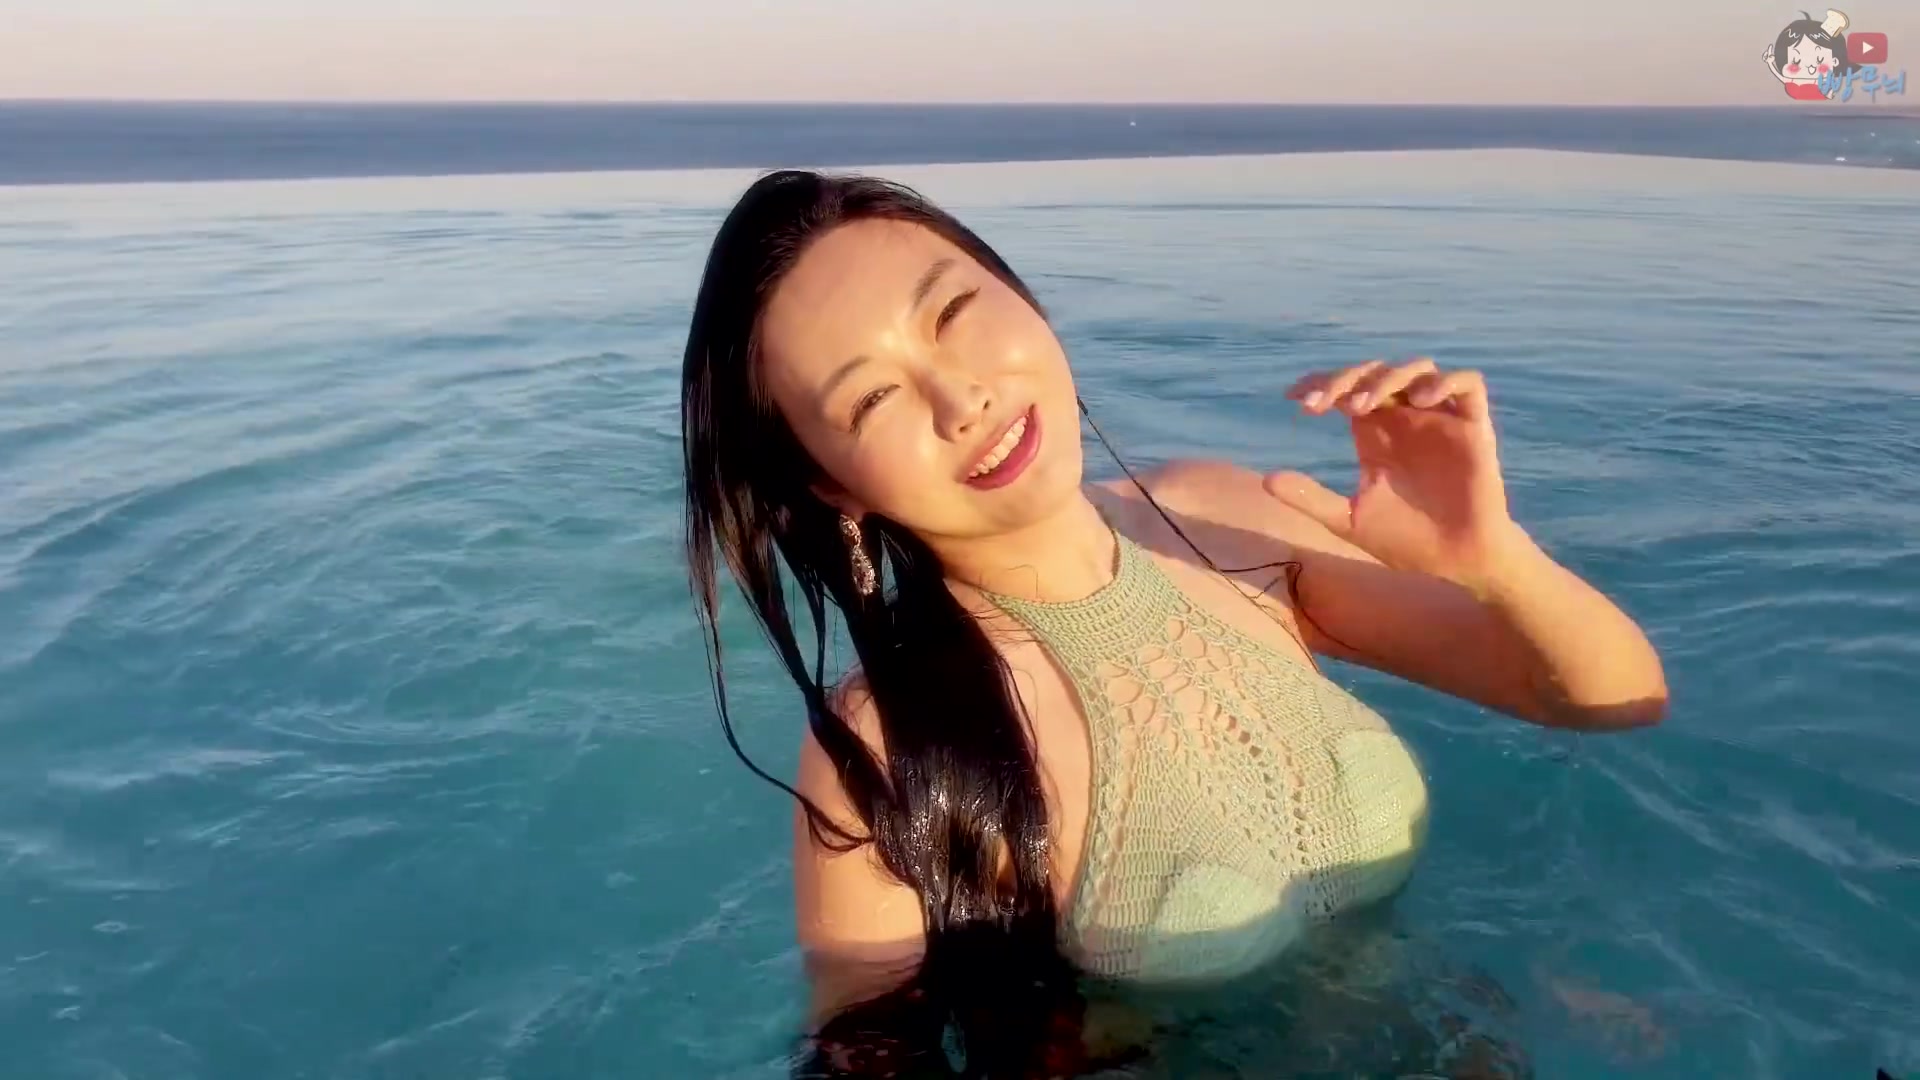 韩国网红模特水中采访薄荷色网纱泳装